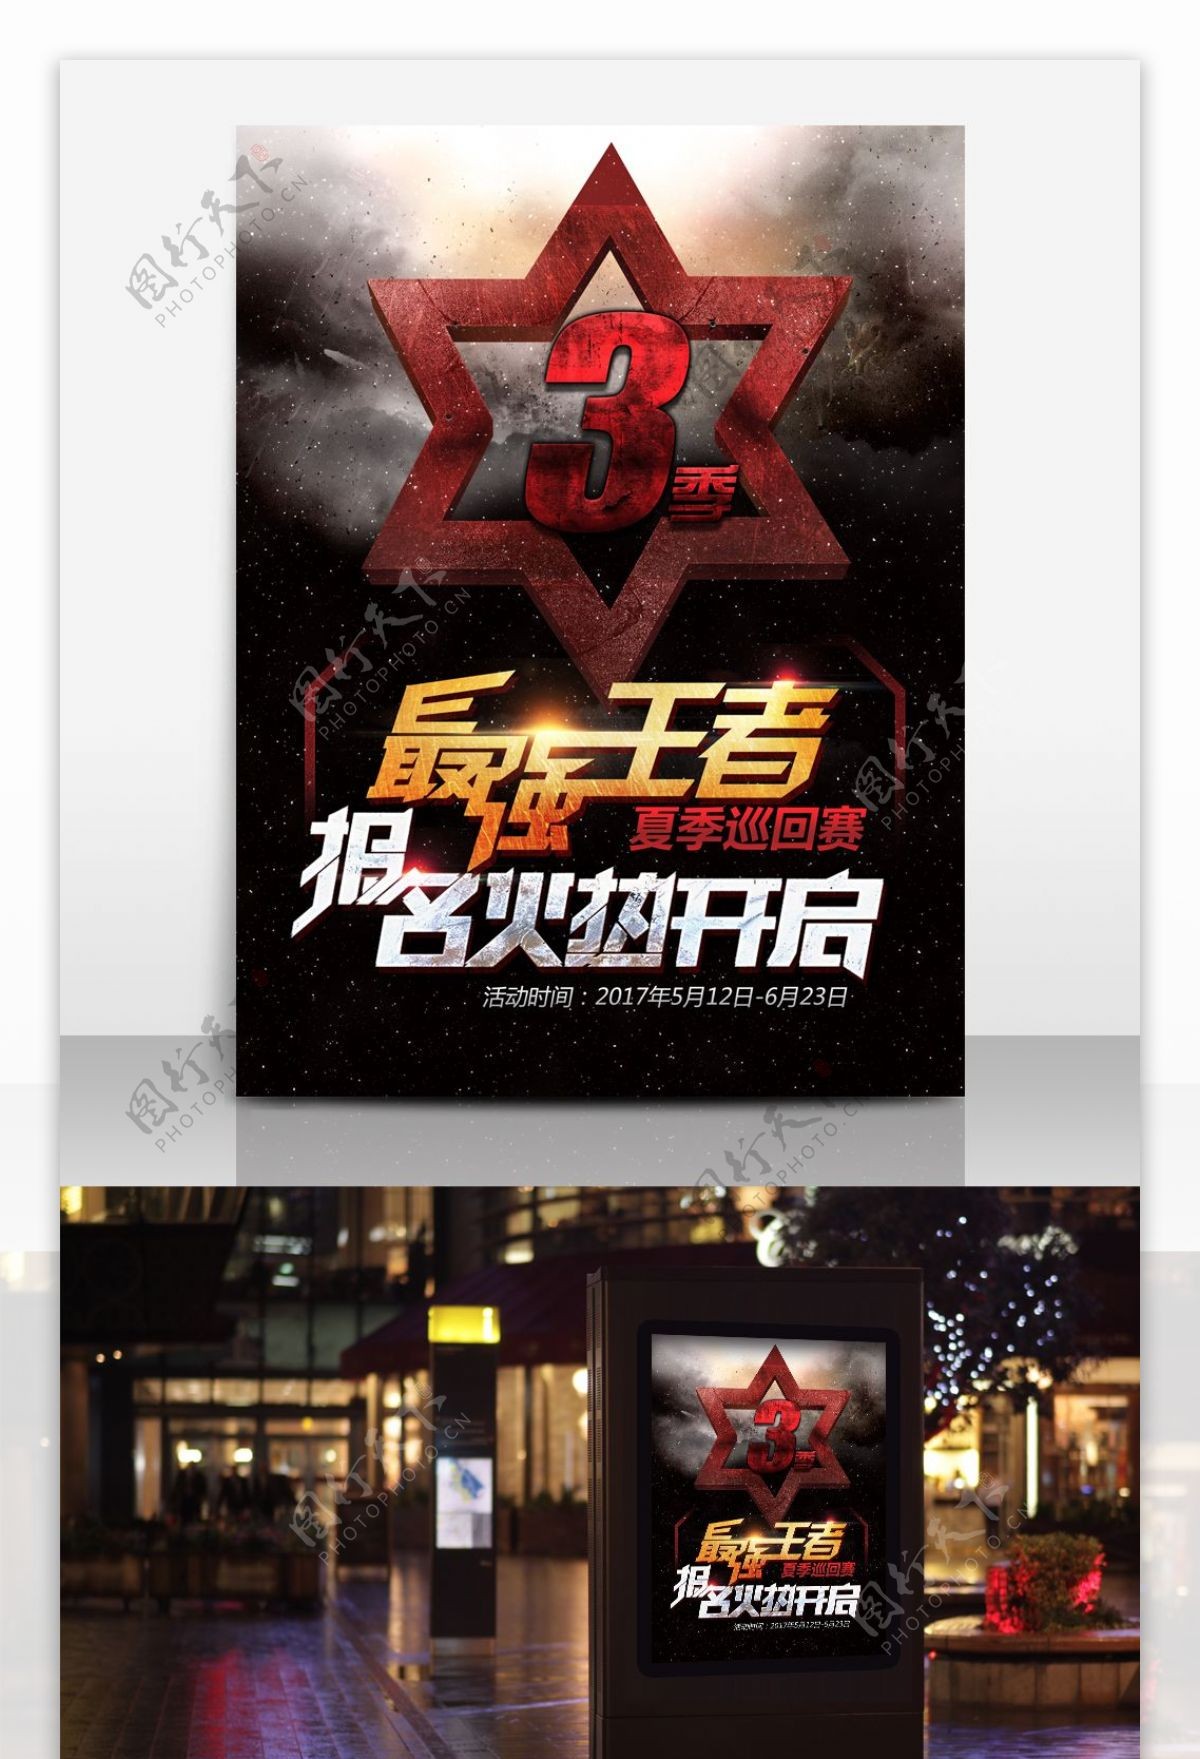 炫酷字体王者荣耀最强王者游戏联赛报名海报